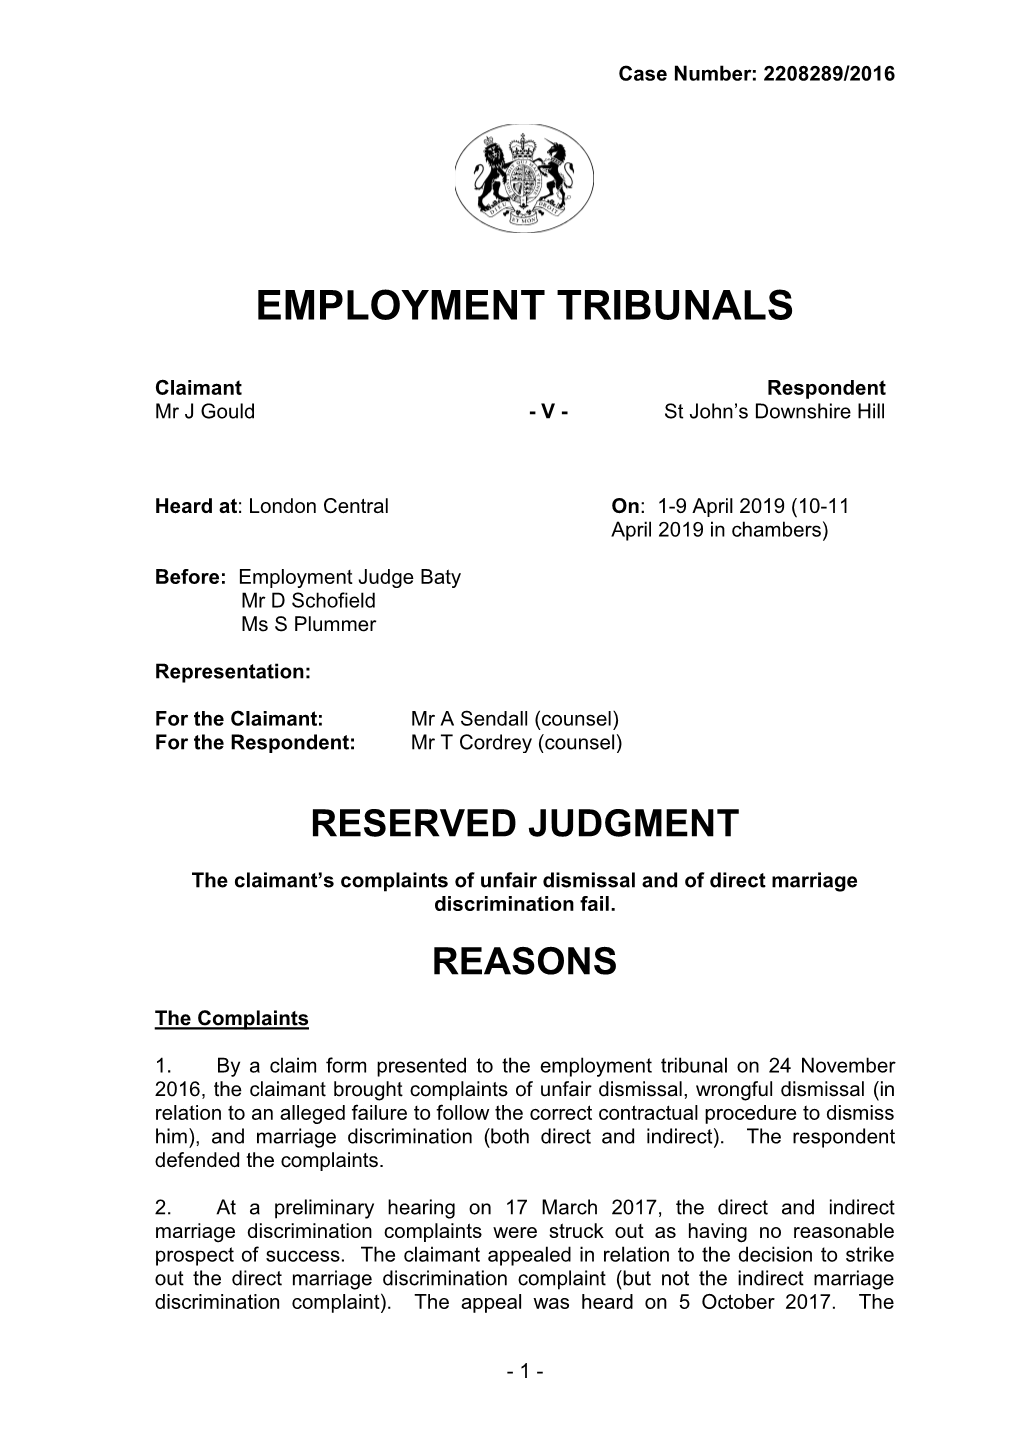 Employment Tribunals